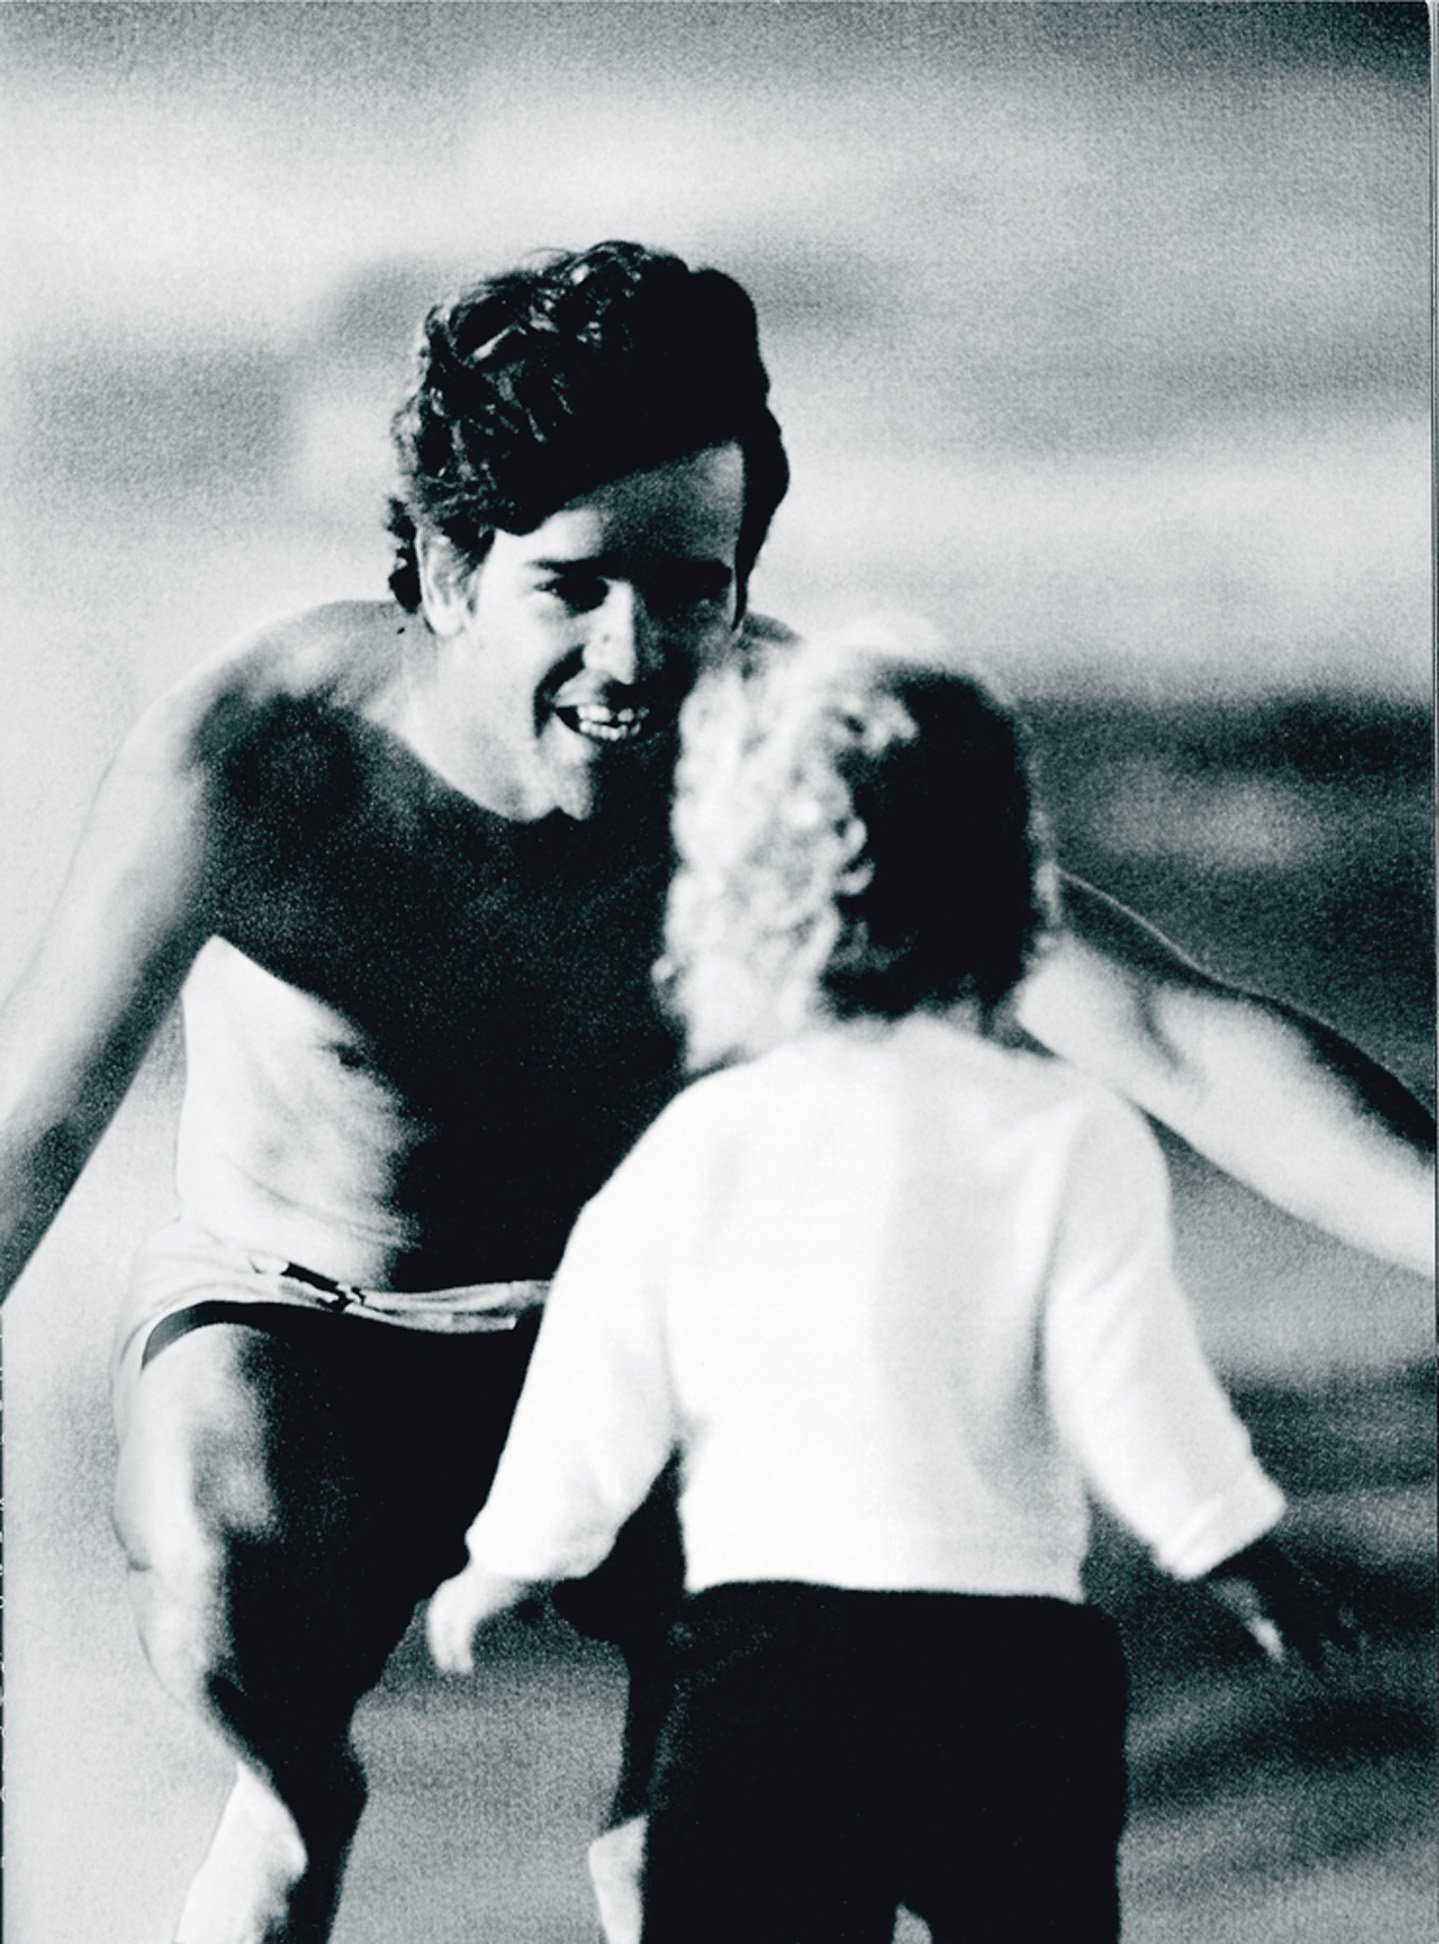 Pepê (1957/1991): nacionalidade: brasileiro do Rio de Janeiro / principais feitos: primeiro brasileiro a figurar entre os 20 melhores surfistas do mundo, foi sexto lugar no Pipe Masters, no Havaí, em 1976 e campeão mundial de voo livre / registro: Páginas Negras na Trip 14 [1989], com fotos do futuro cineasta Marcos Prado (Tropa de Elite)